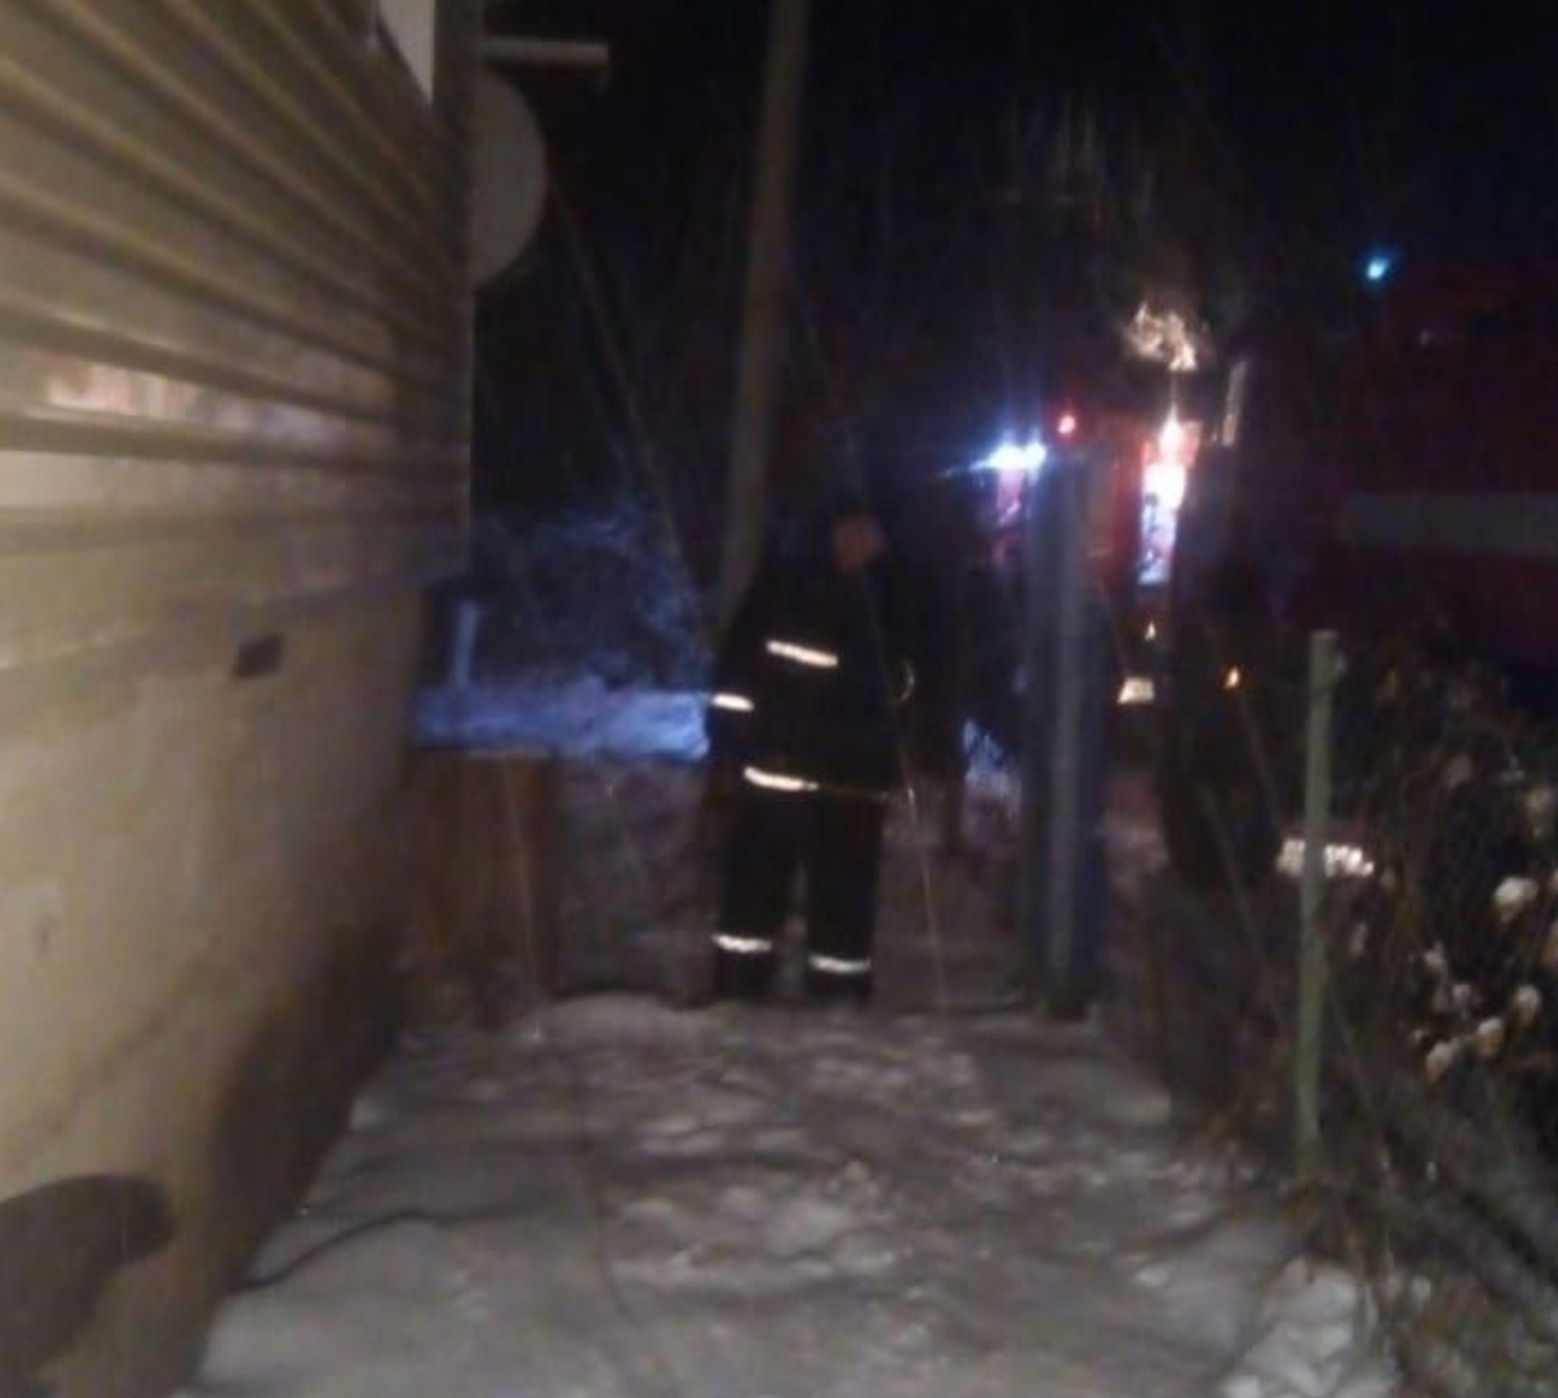 В Башкирии извещатель предупредил семью с тремя детьми о пожаре